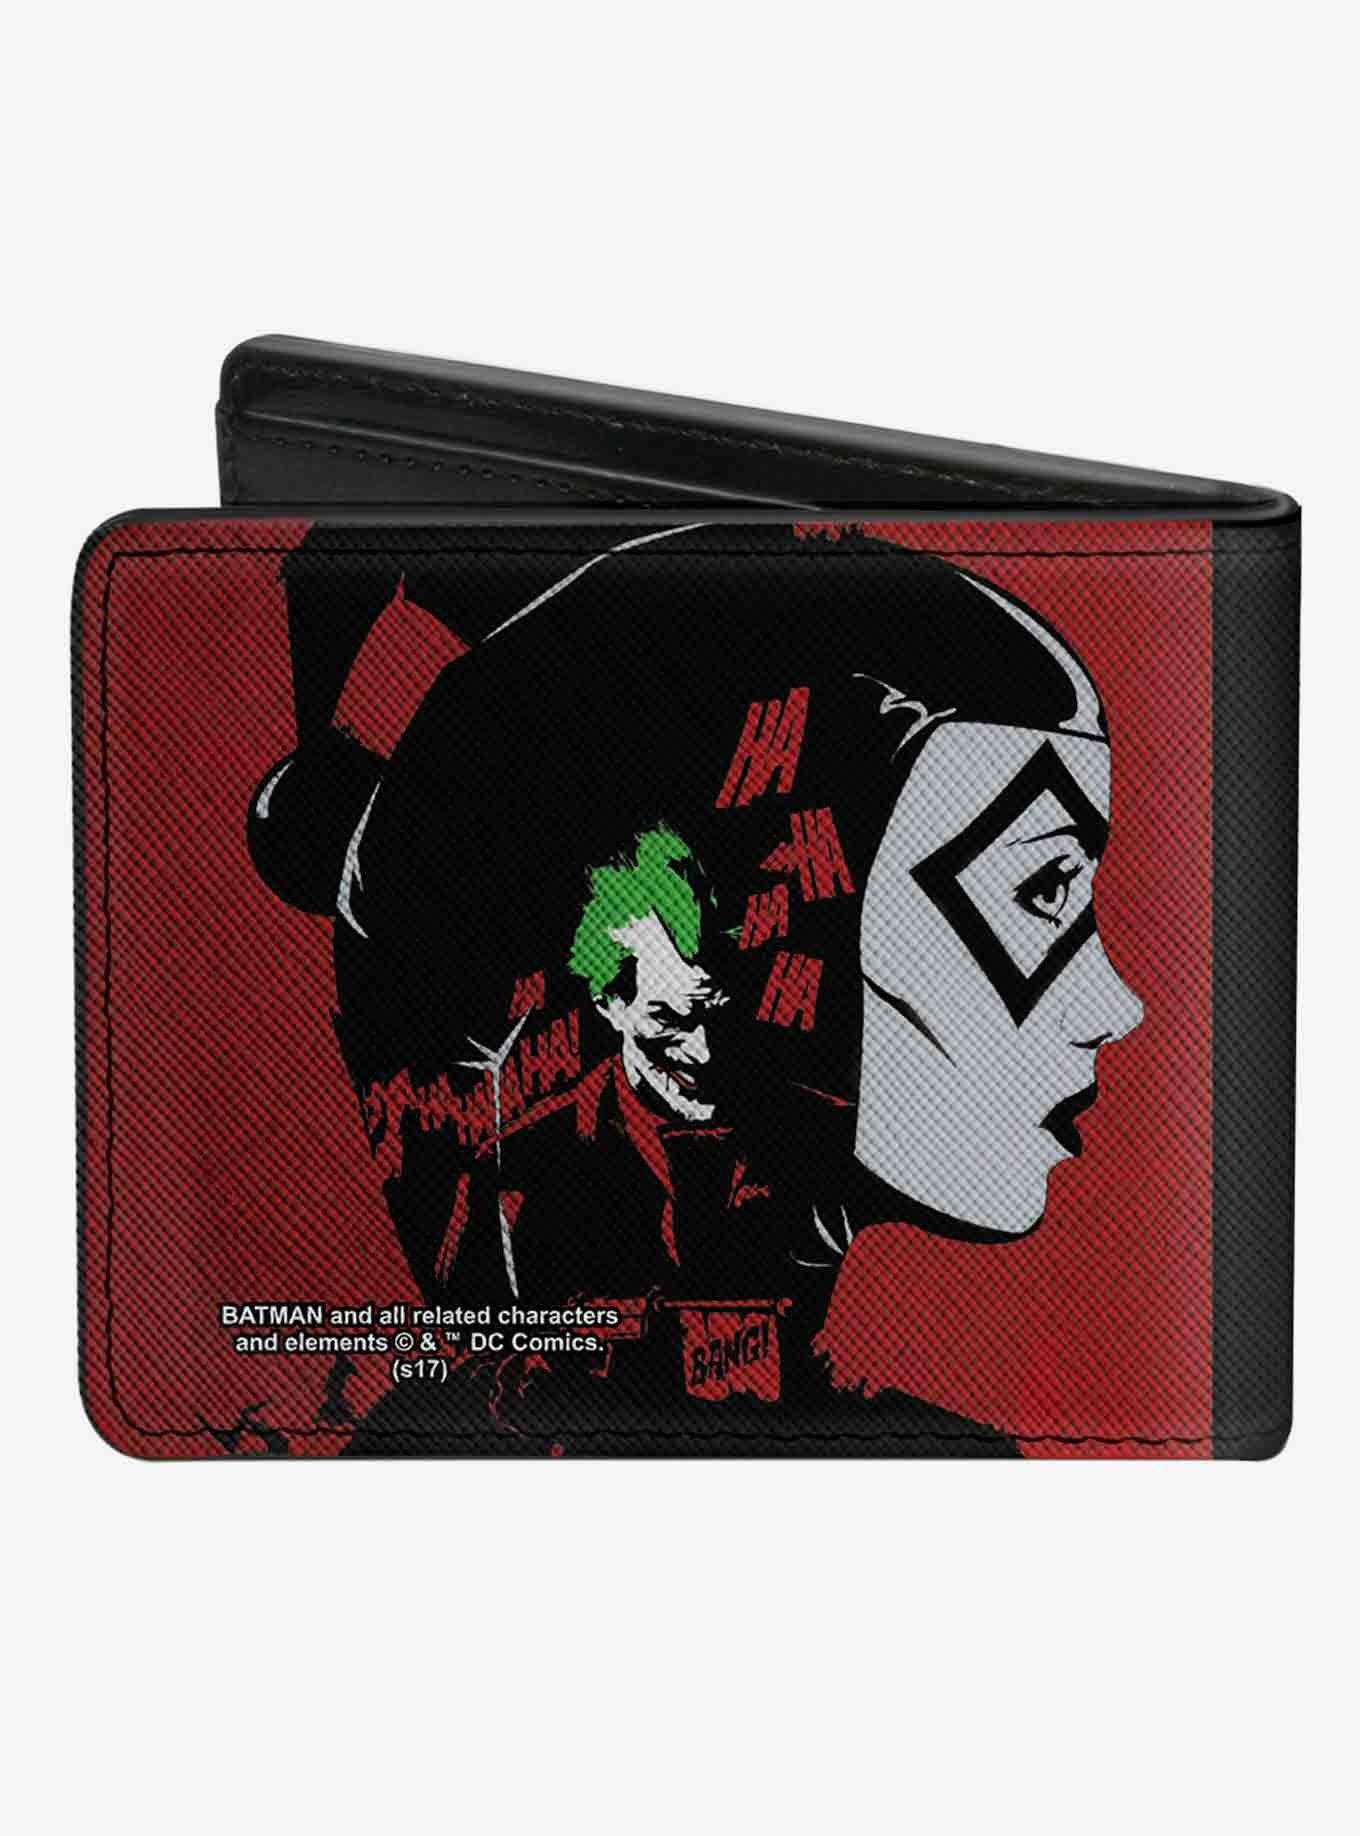 DC Comics Catwoman Batman Harley Quinn Joker Bifold Wallet, , alternate